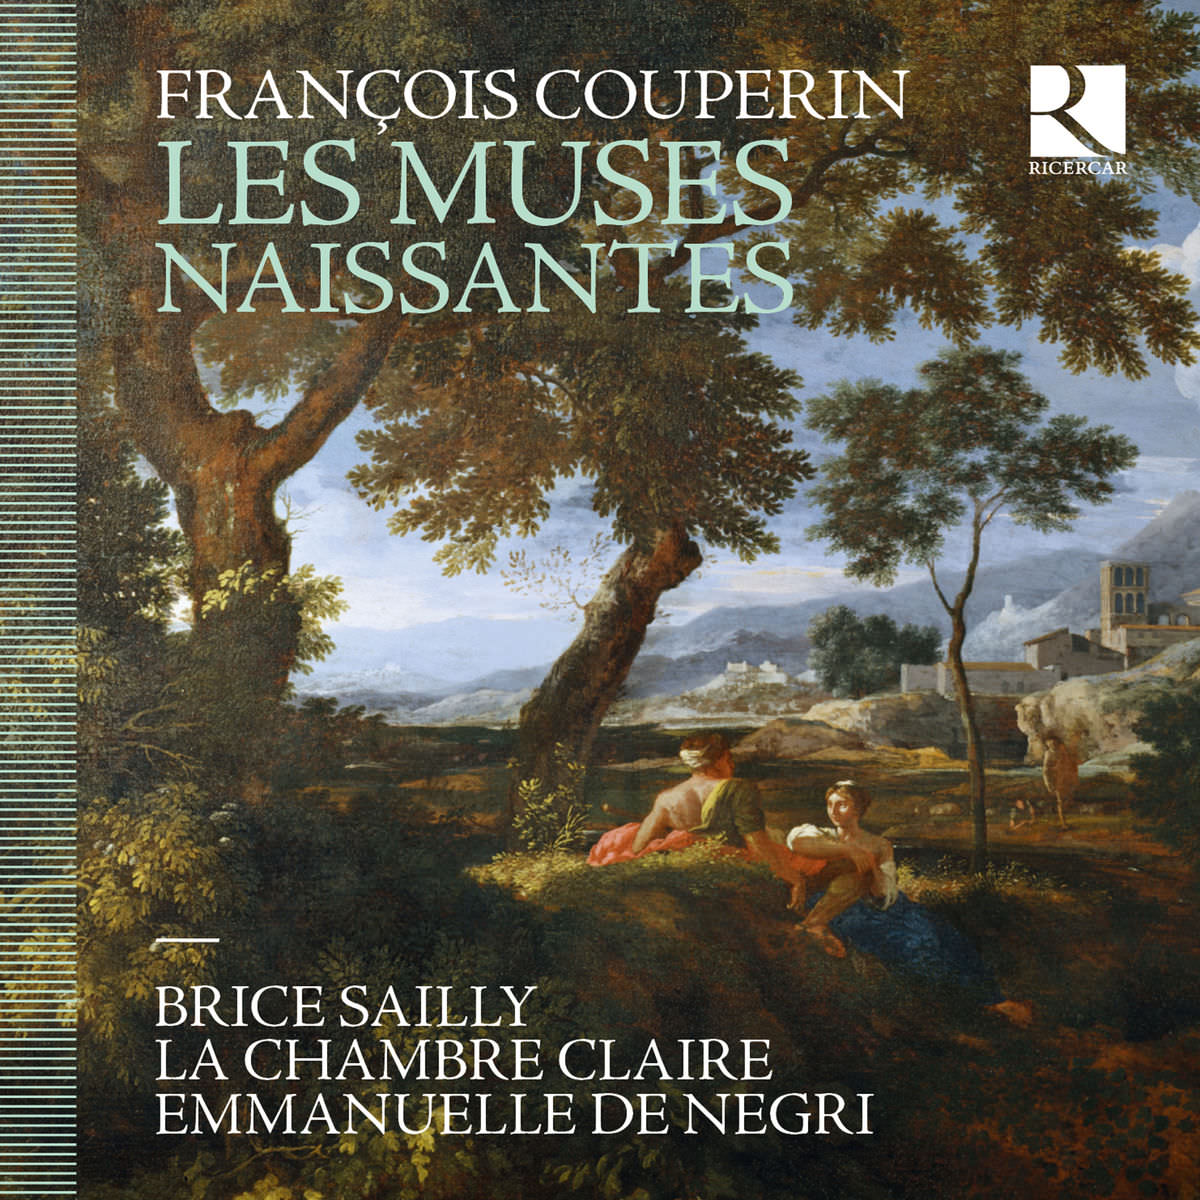 Brice Sailly, La chambre claire & Emmanuelle De Negri - François Couperin: Les muses naissantes (2018) [FLAC 24bit/44,1kHz]